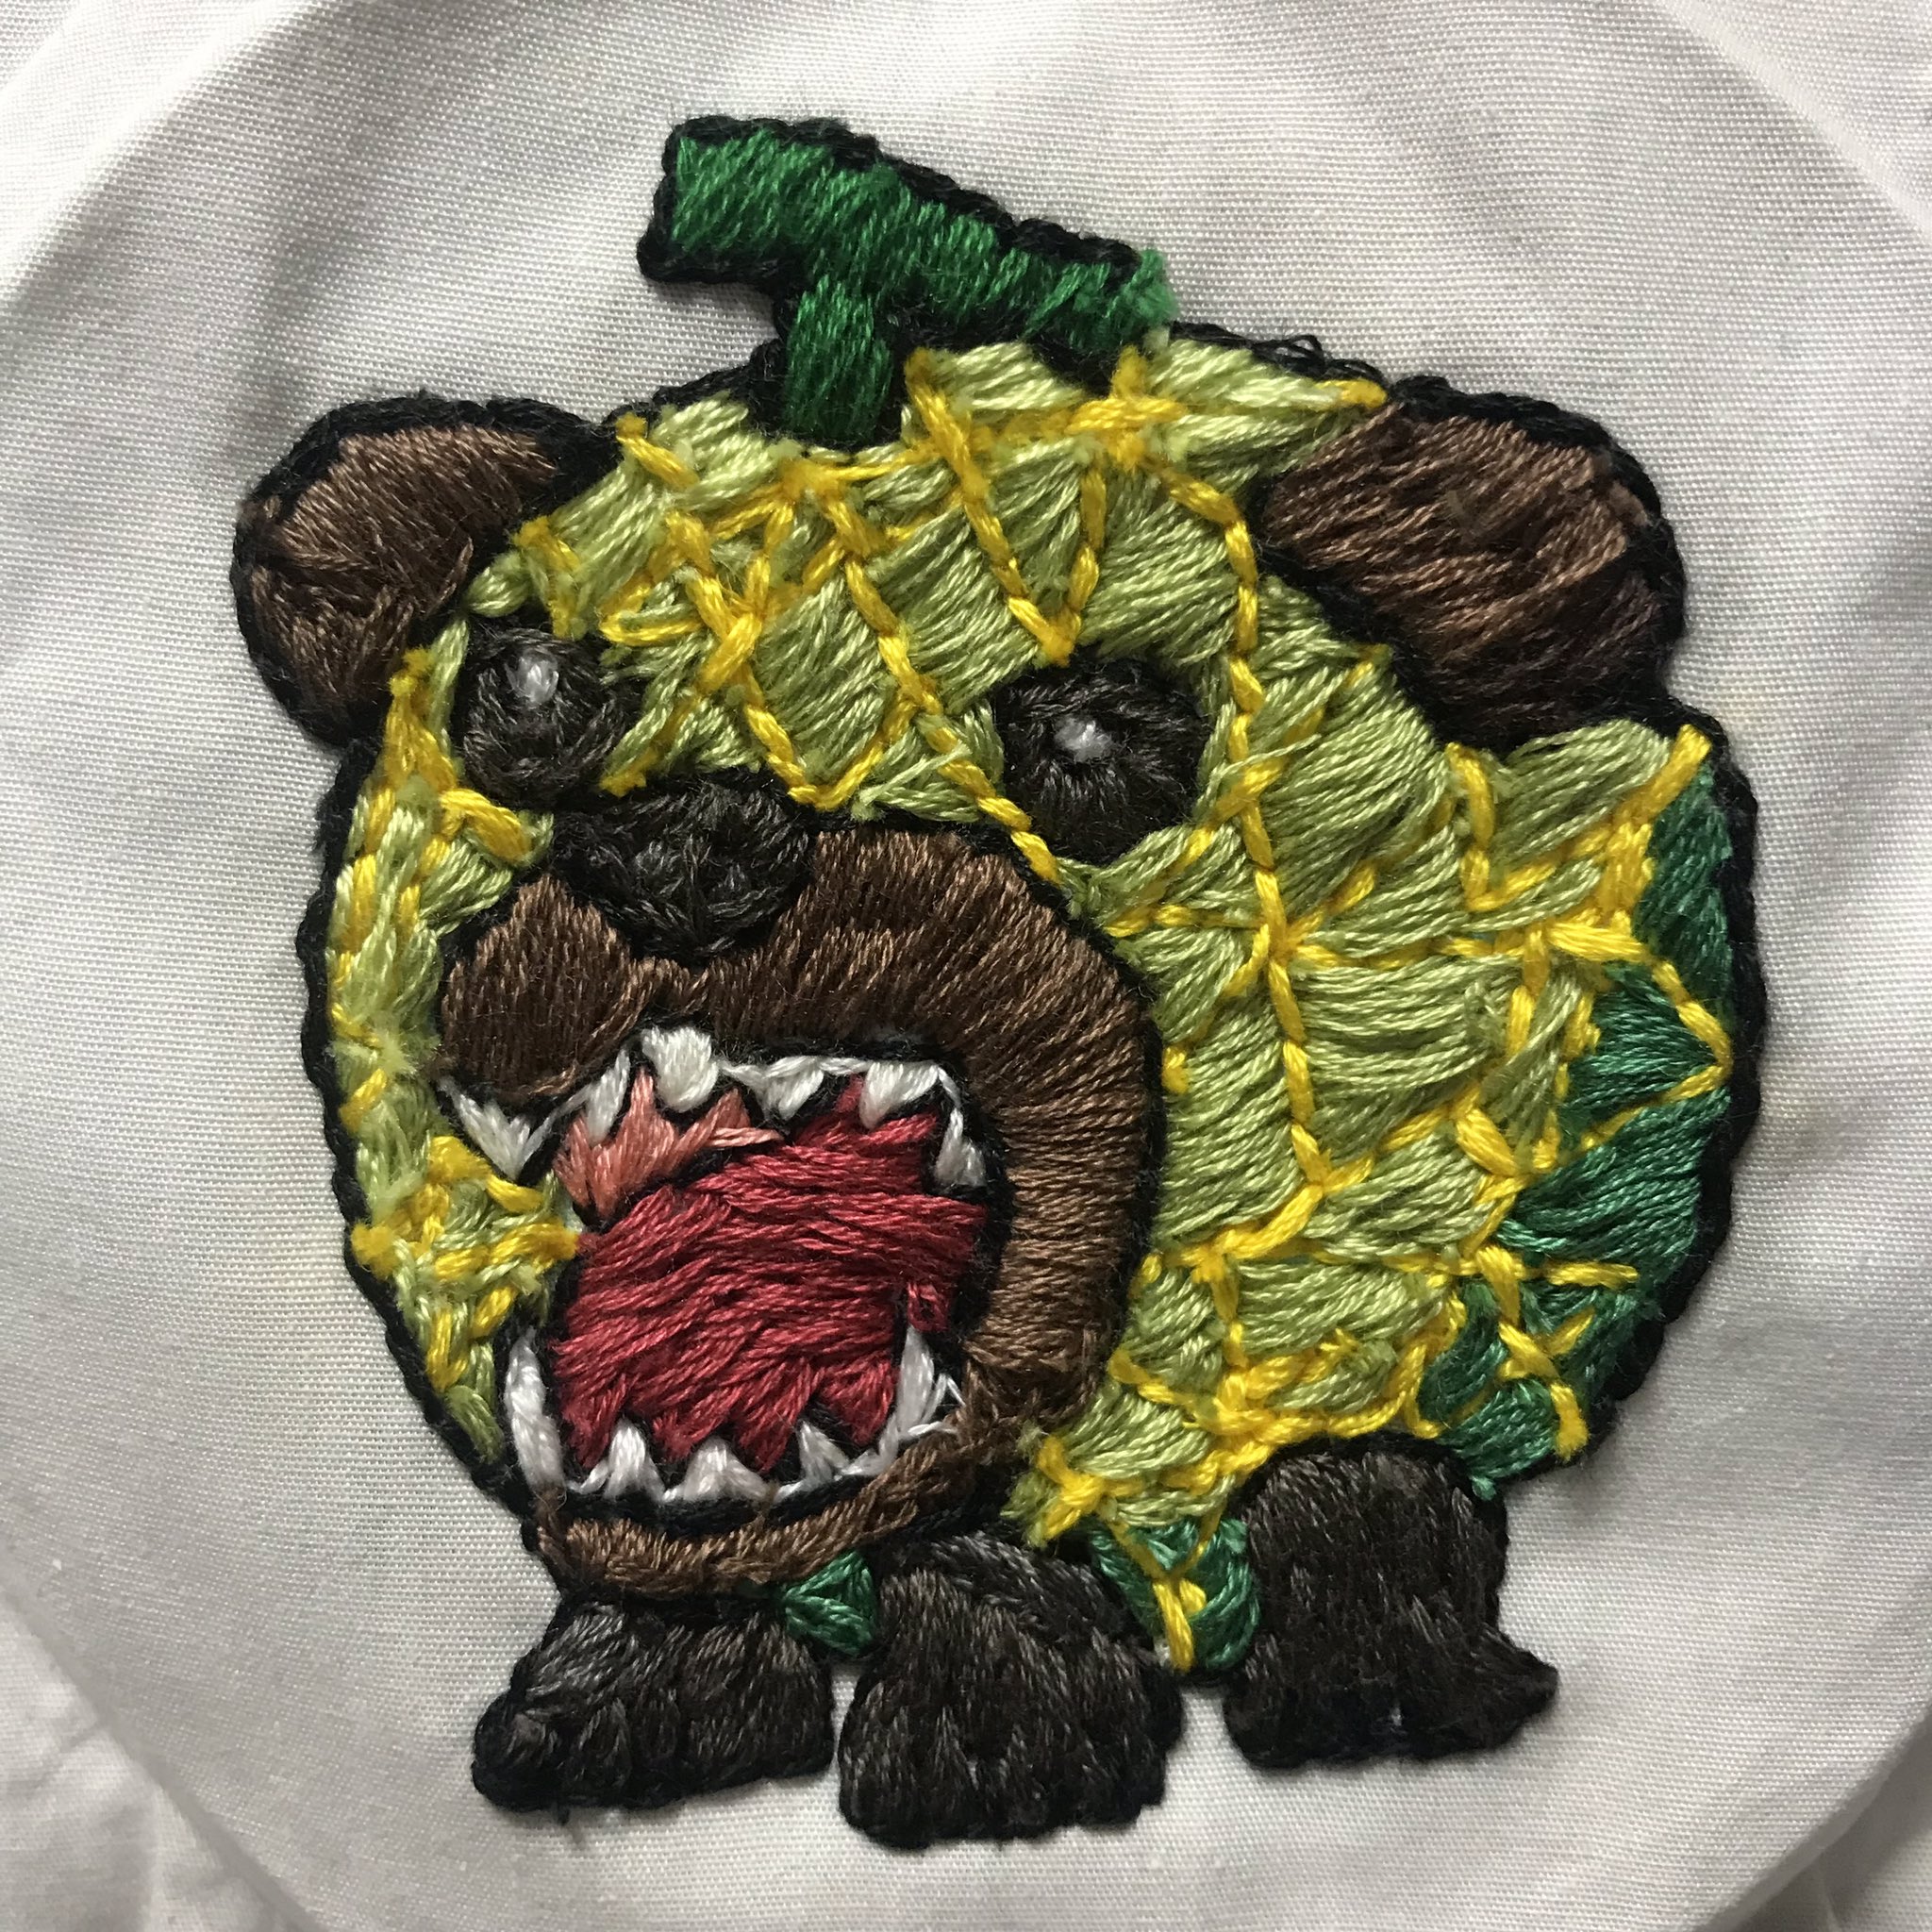 あみぴょん 刺繍 フリーステッチング メロン熊 北海道夕張市 全国的に怖いキャラで有名なメロン熊さん コロナウイルスがおさまったらまた皆んなを食べたいみたい リアルなのは怖すぎて作れなかった イラストベースで作りました T Co